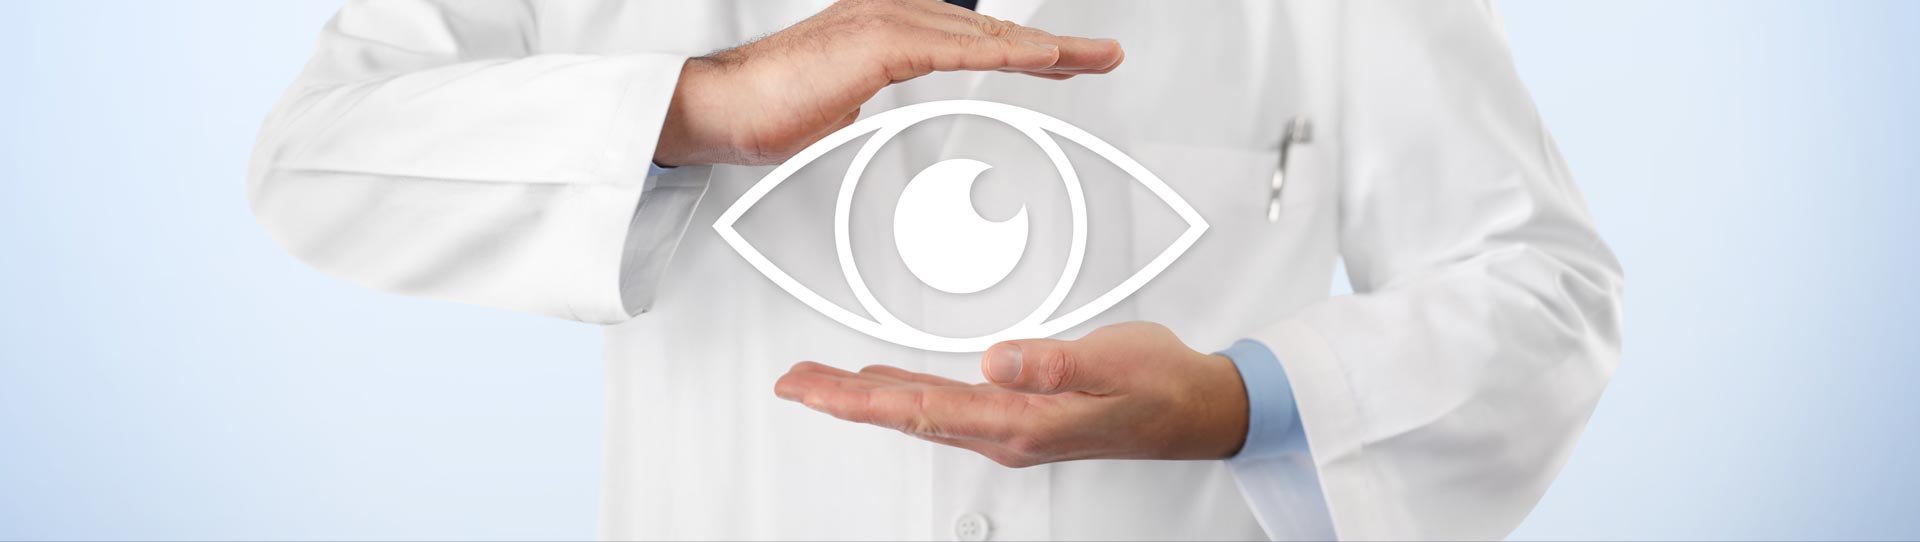 Eye doctor with image of an eye